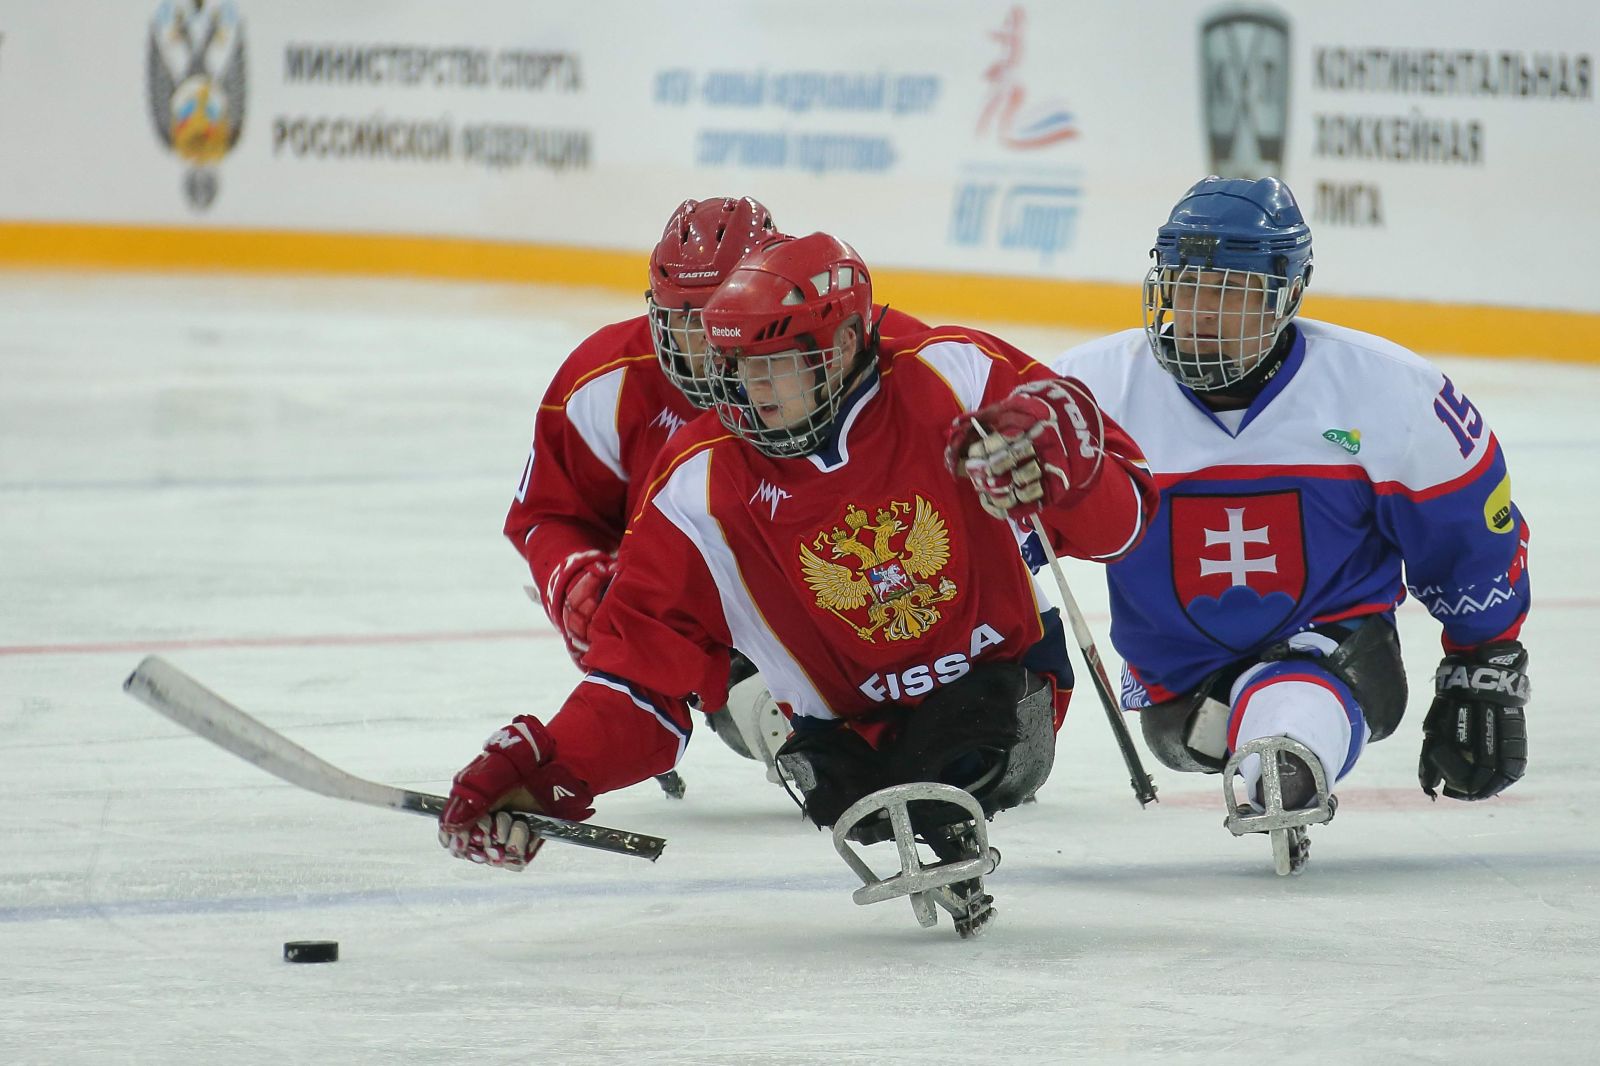 Сборная команда России по хоккею-следж будет отстаивать титул чемпиона Европы в 2020 году в Швеции